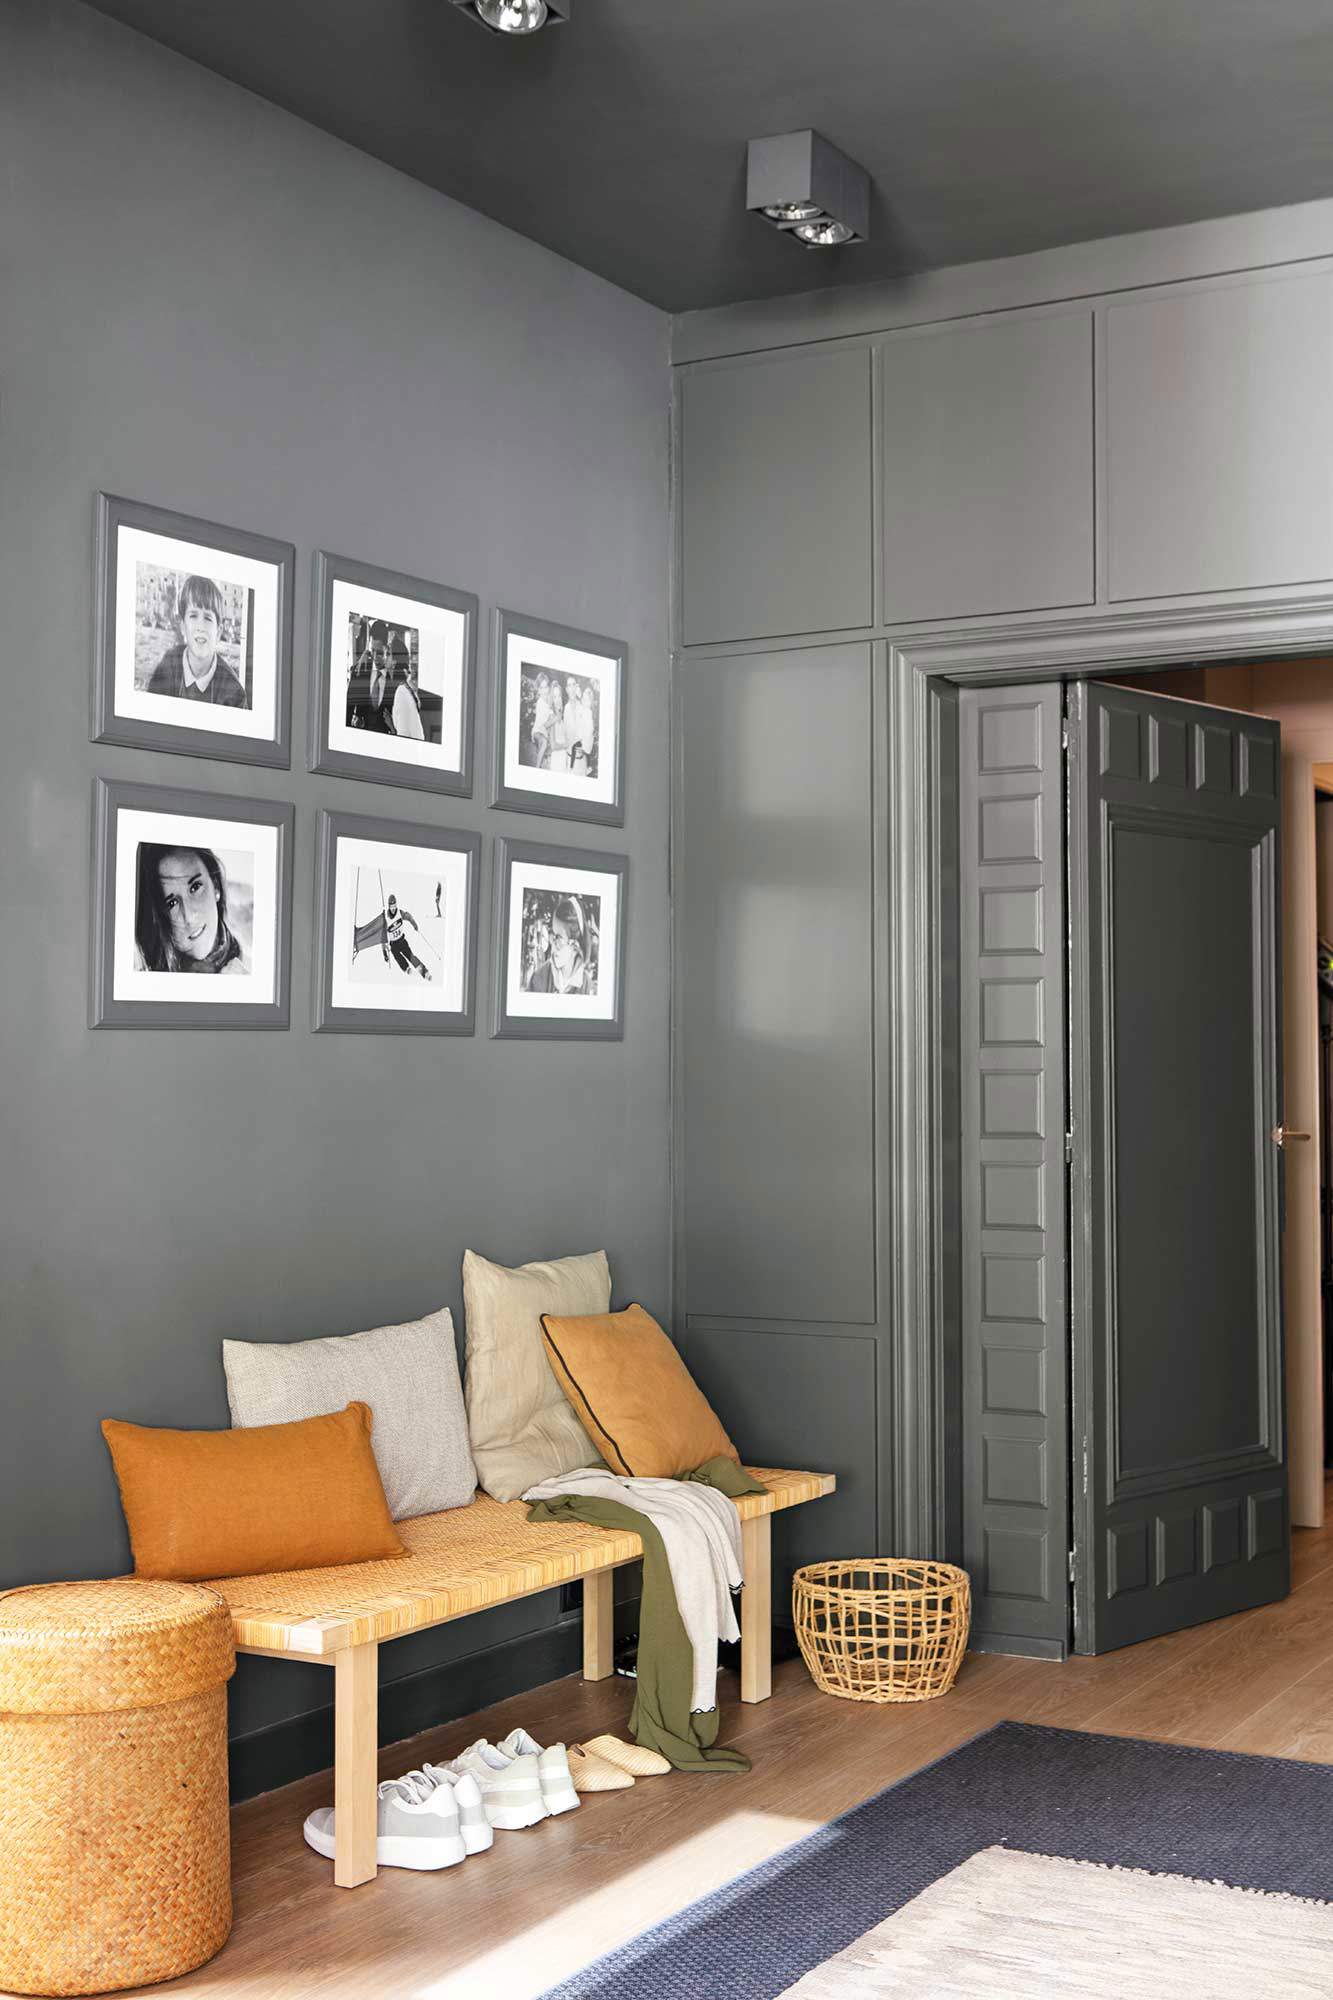 Recibidor con pared pintada de un color oscuro y decorada con fotos en blanco y negro.